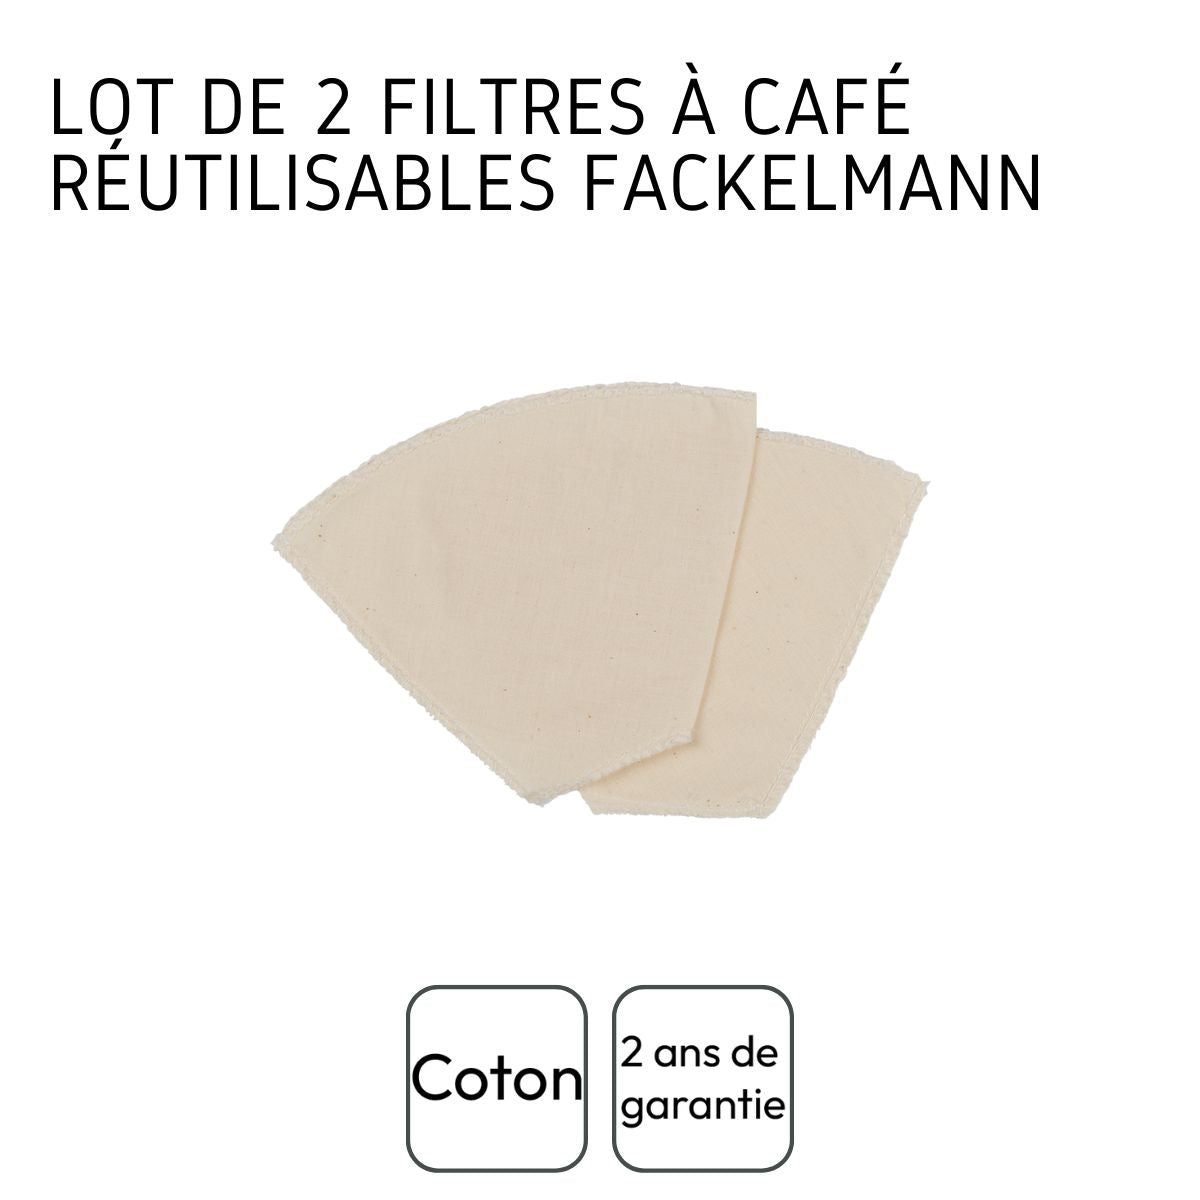 Lot de 2 filtres à café réutilisables en coton Fackelmann